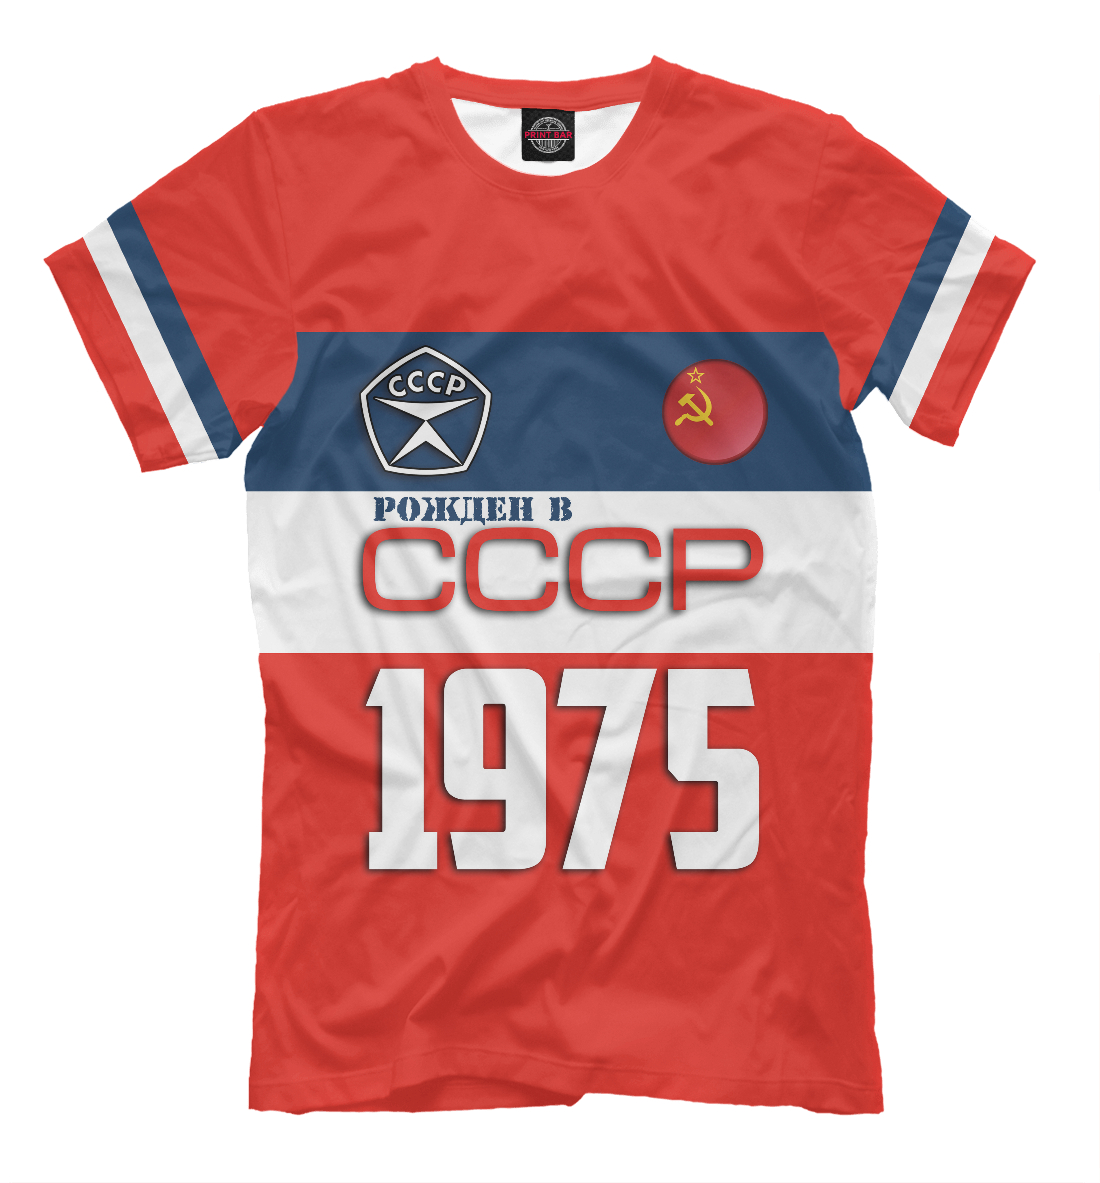 Футболка Рожден в СССР 1975 год для мужчин, артикул: SSS-336571-fut-2mp